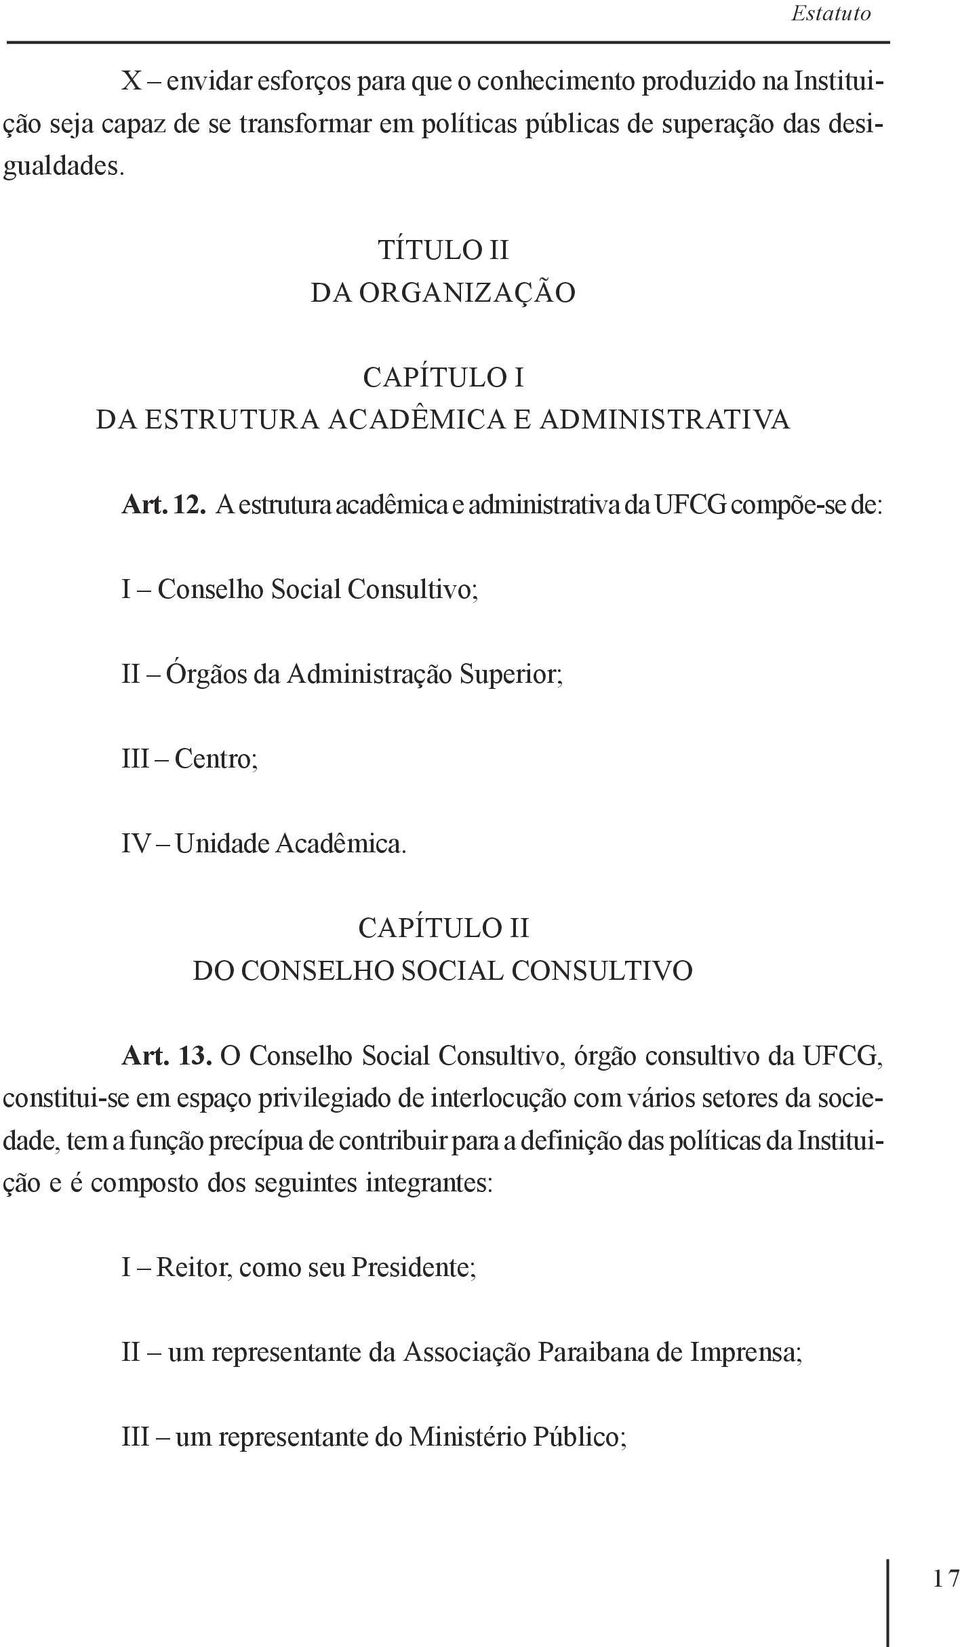 A estrutura acadêmica e administrativa da UFCG compõe-se de: I Conselho Social Consultivo; II Órgãos da Administração Superior; III Centro; IV Unidade Acadêmica.